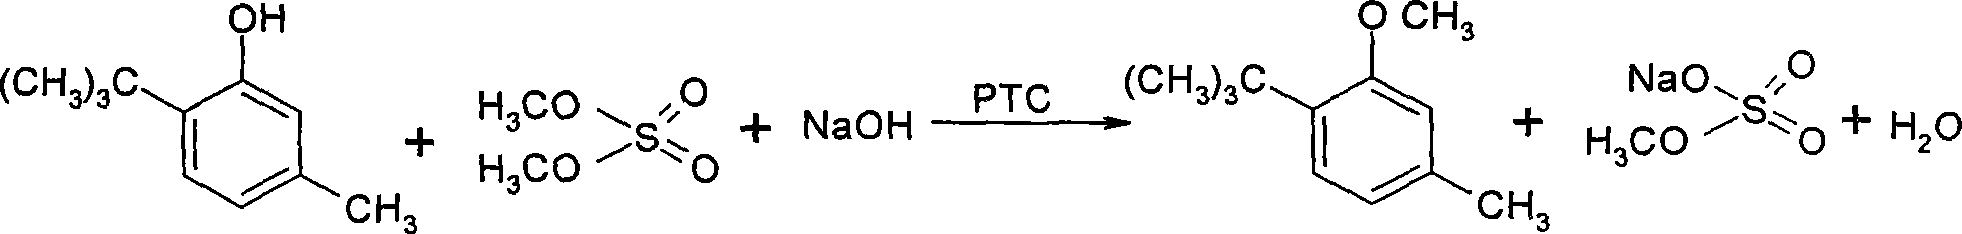 Method for preparing 3-methoxyl-4-t-butyltoluene